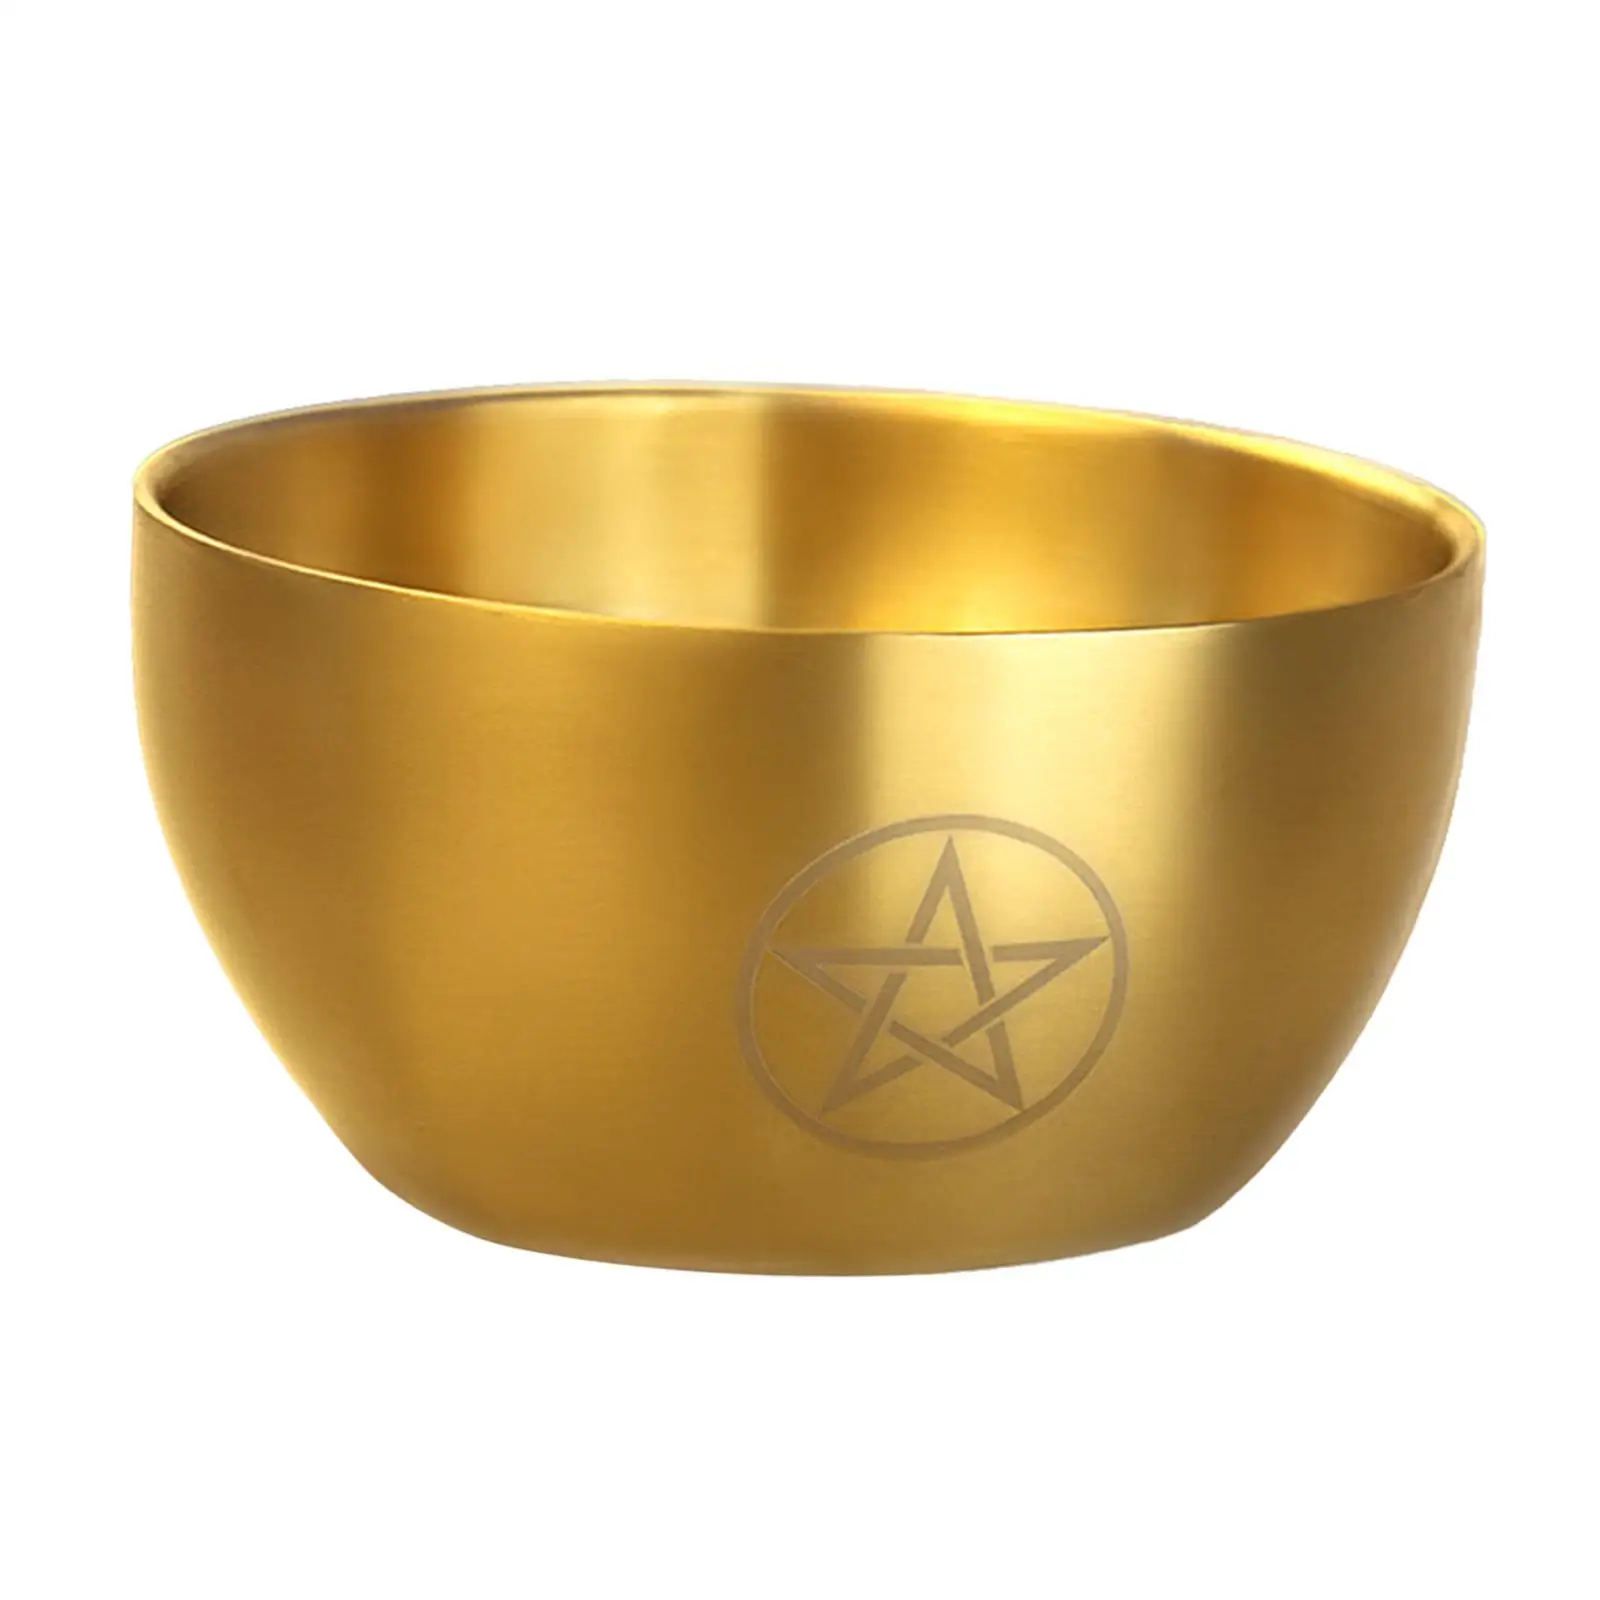 Yoga Meditation Bowl Hand Carved Home Decoration Smudging Bowl Decorative Metal Bowl Altar Burner Holder Pentagram Offering Bowl